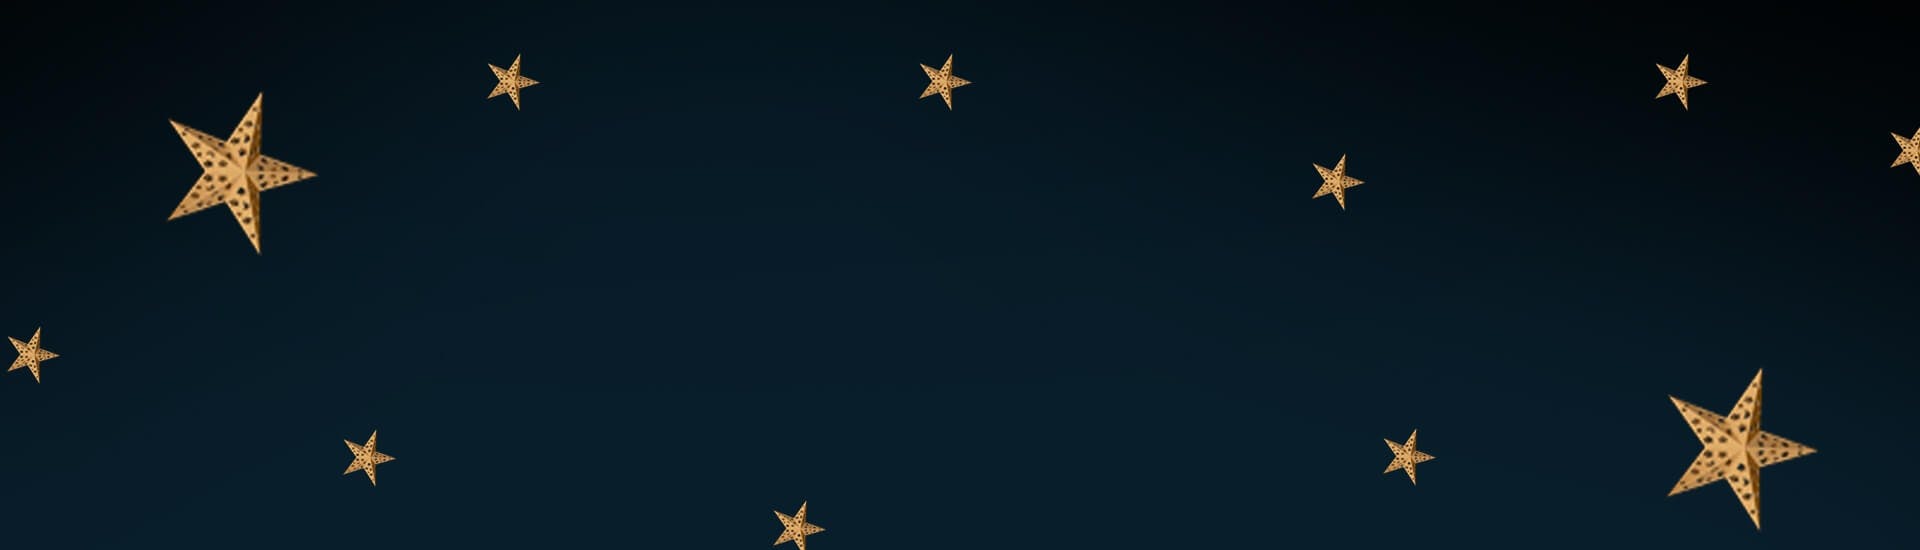 Fond bleu sombre et étoile dorées de fetes de fin d'année